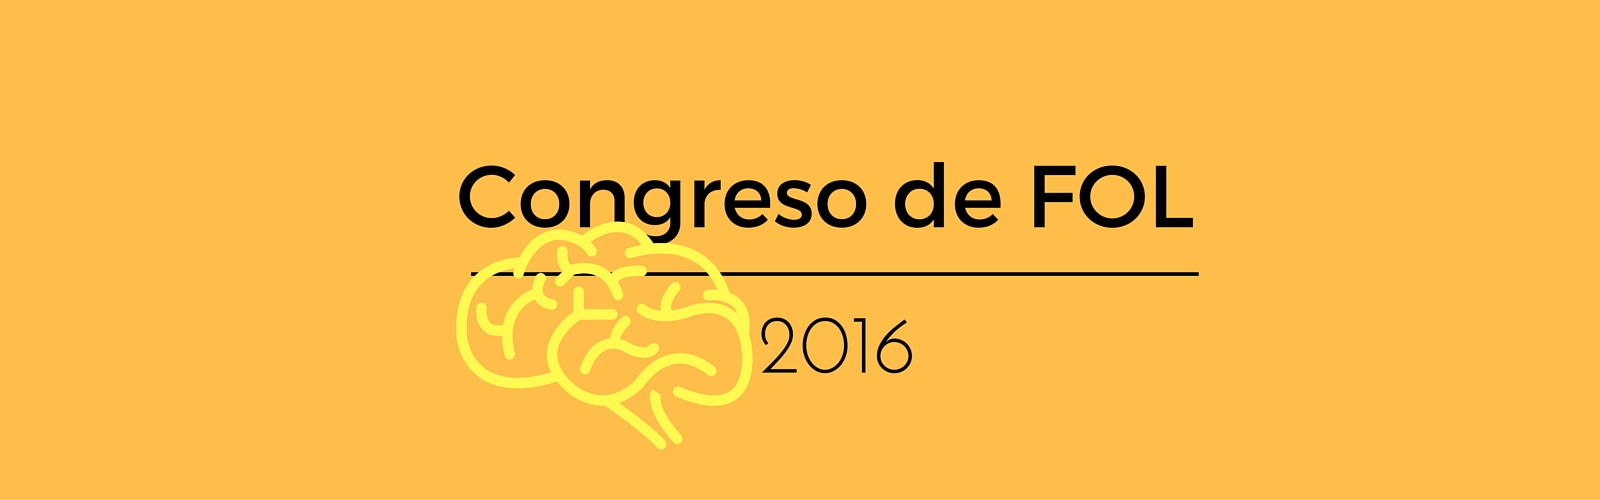 Congreso de FOL 2016